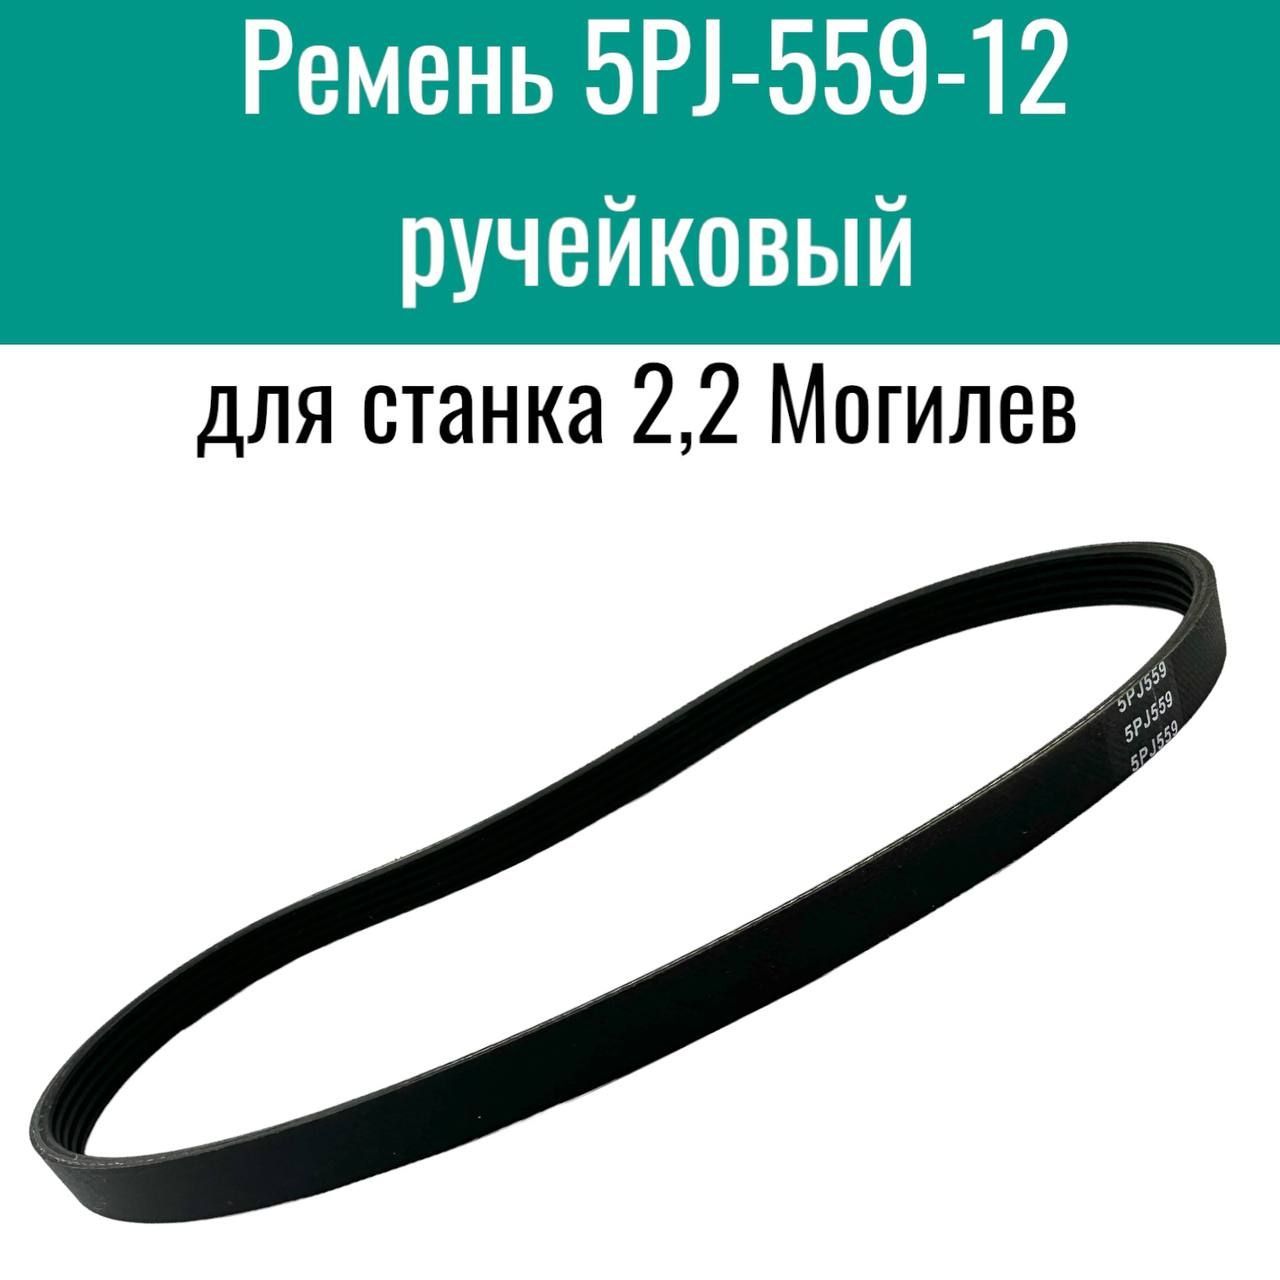 Ремень5РJ-559-12ручейковыйдлястанка2,2Могилев